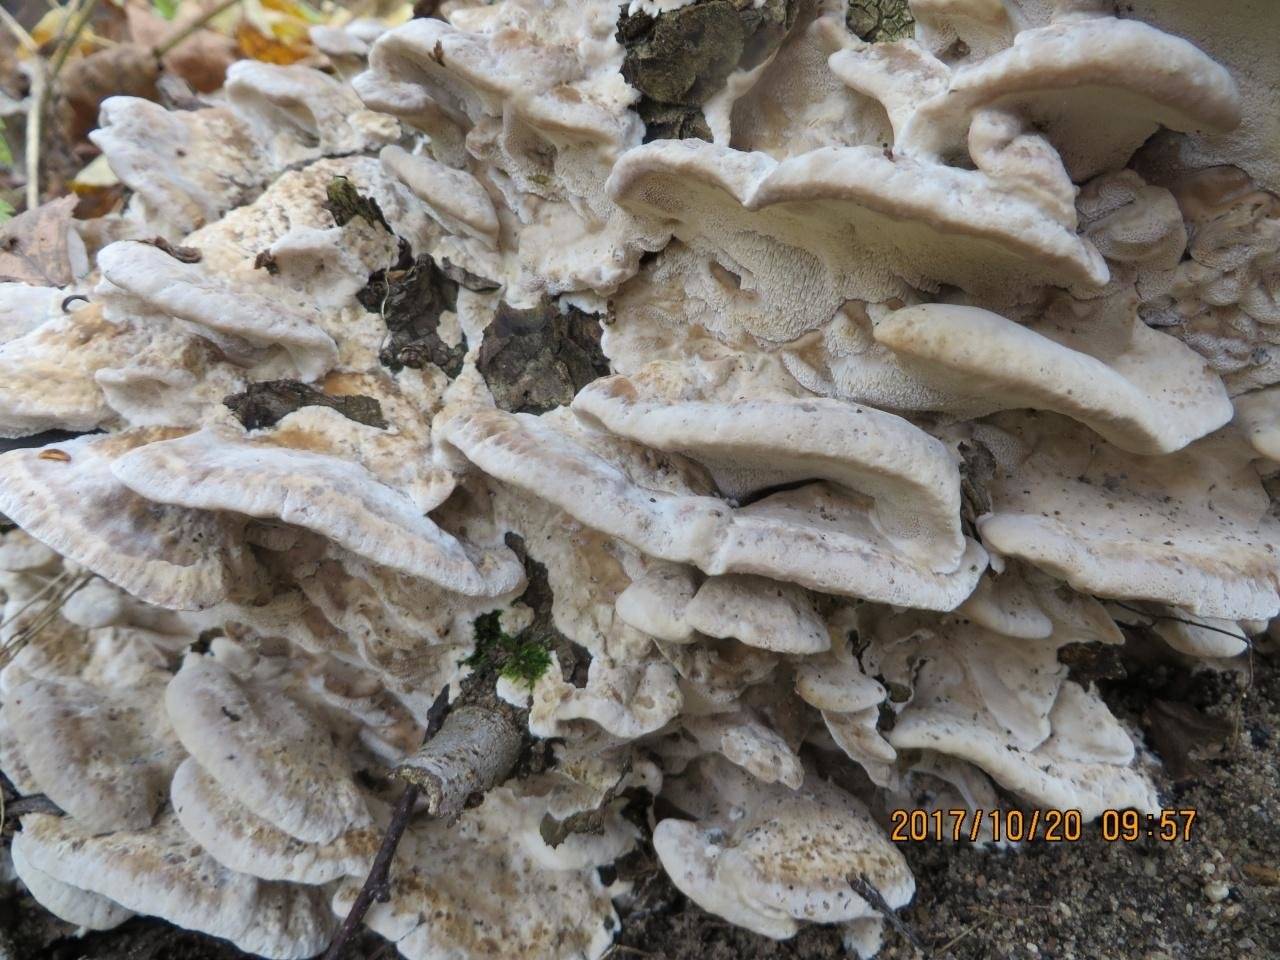 Бьеркандера дымчатая (трутовик дымчатый) (bjerkandera fumosa) – описание, где растет, фото гриба